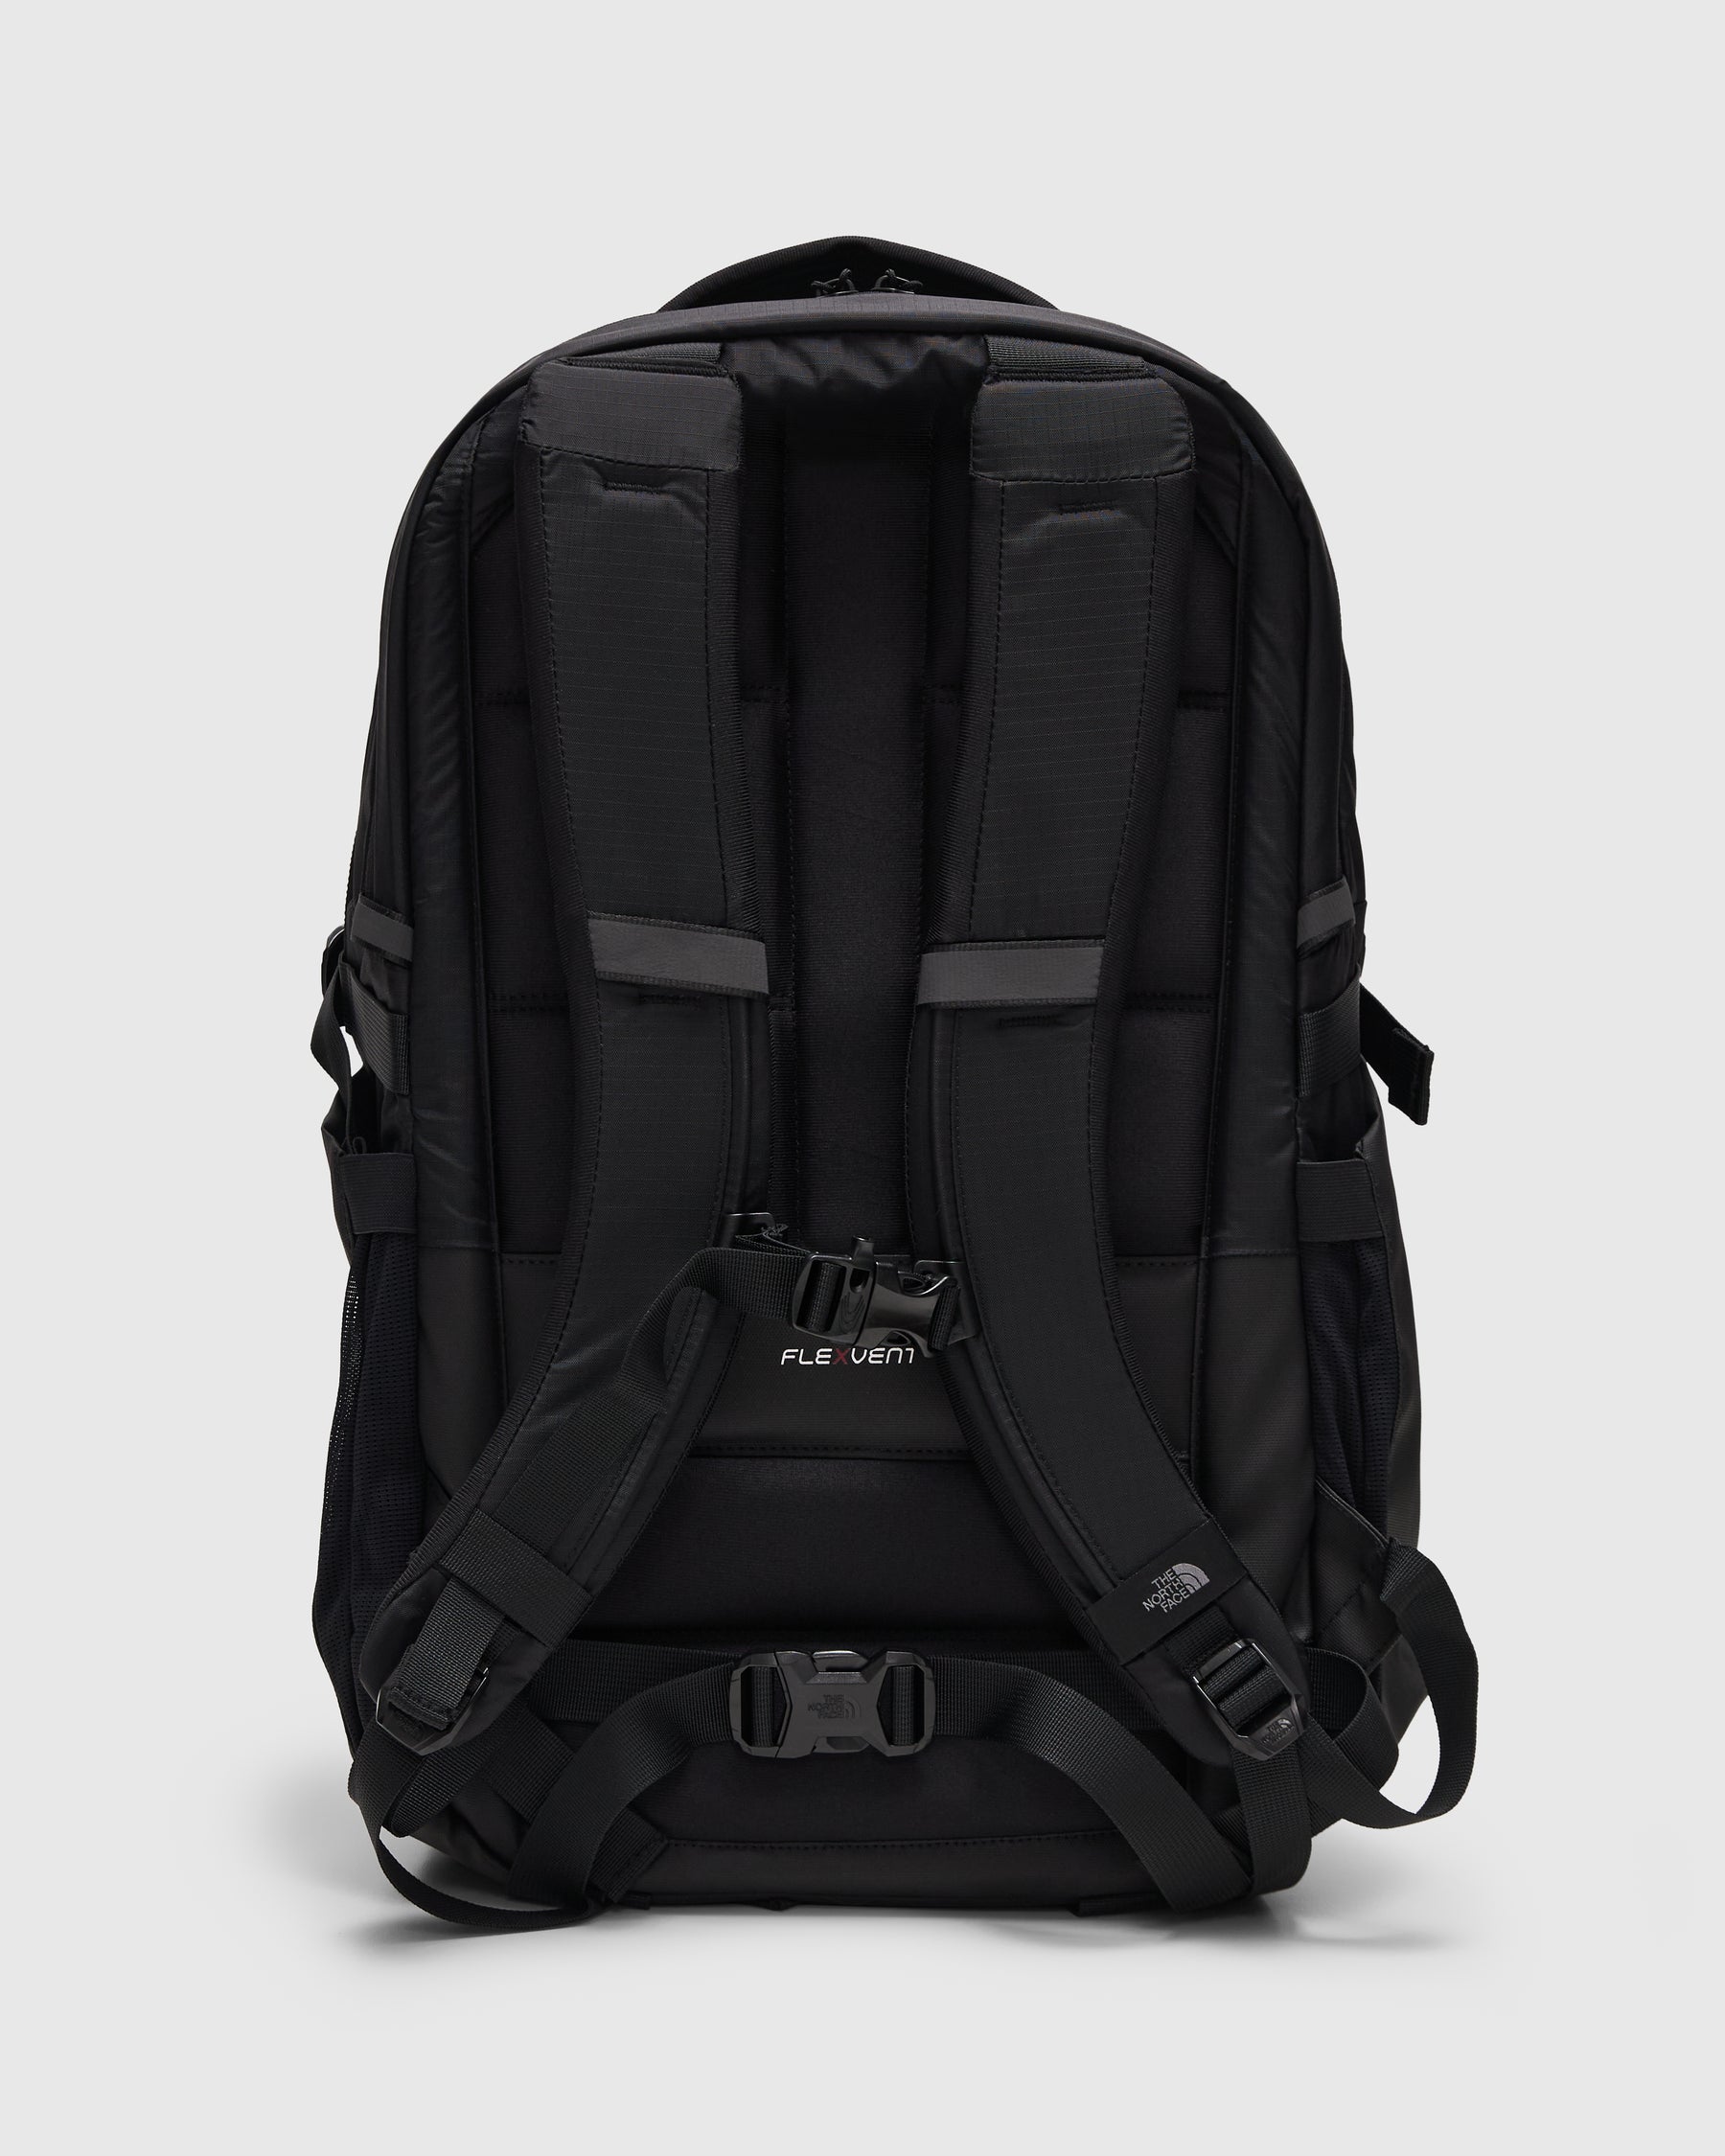 Router Backpack in TNF Black / TNF Black